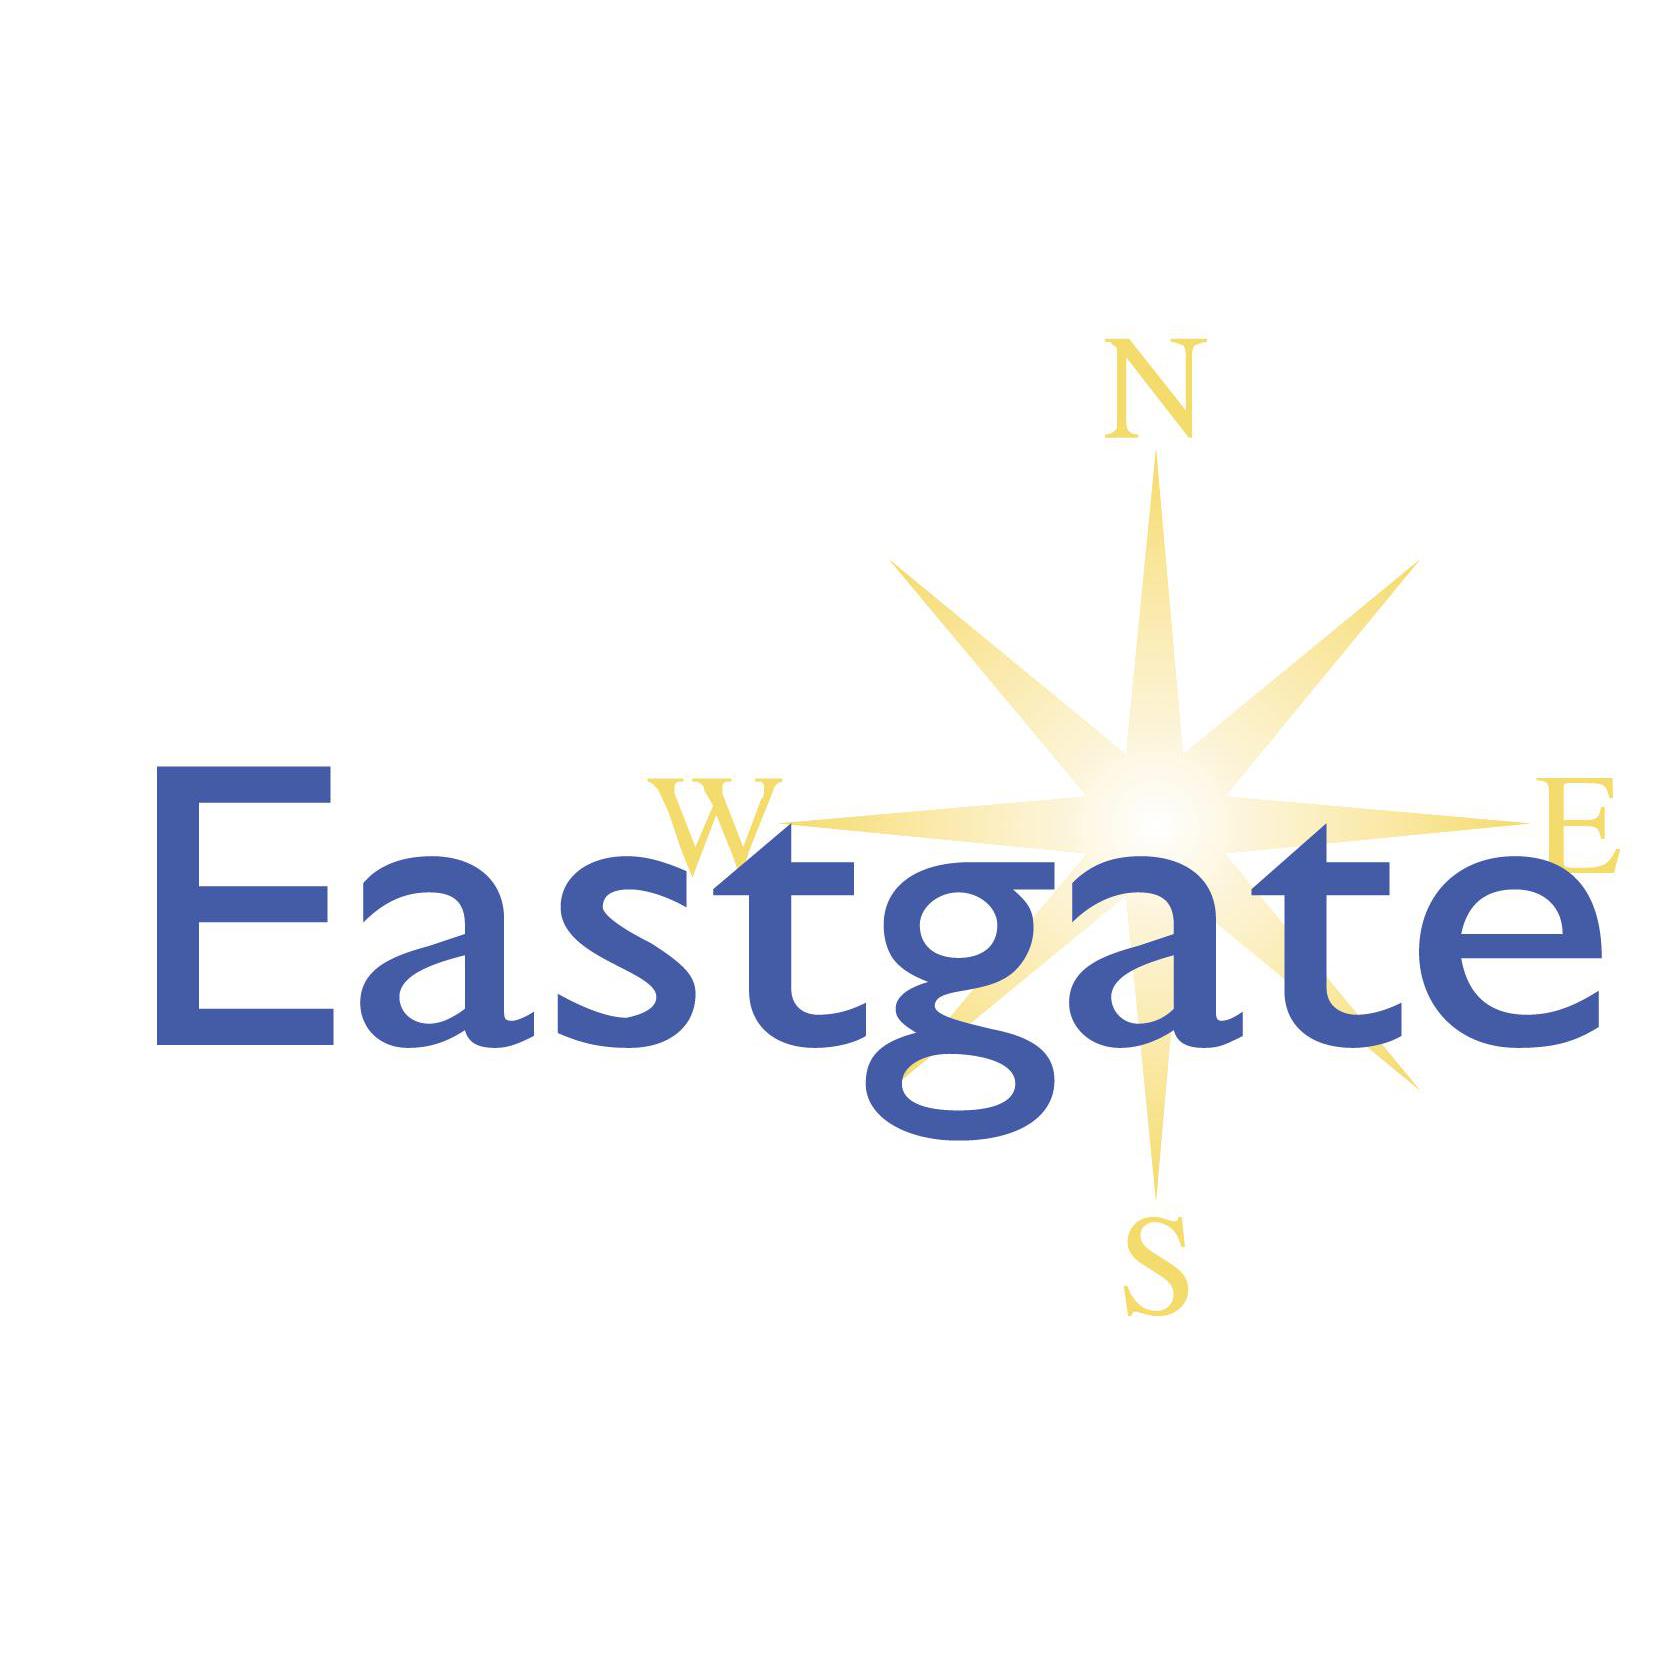 Eastgate Vets, Mildenhall - Mildenhall, Essex IP28 7ER - 01638 713980 | ShowMeLocal.com